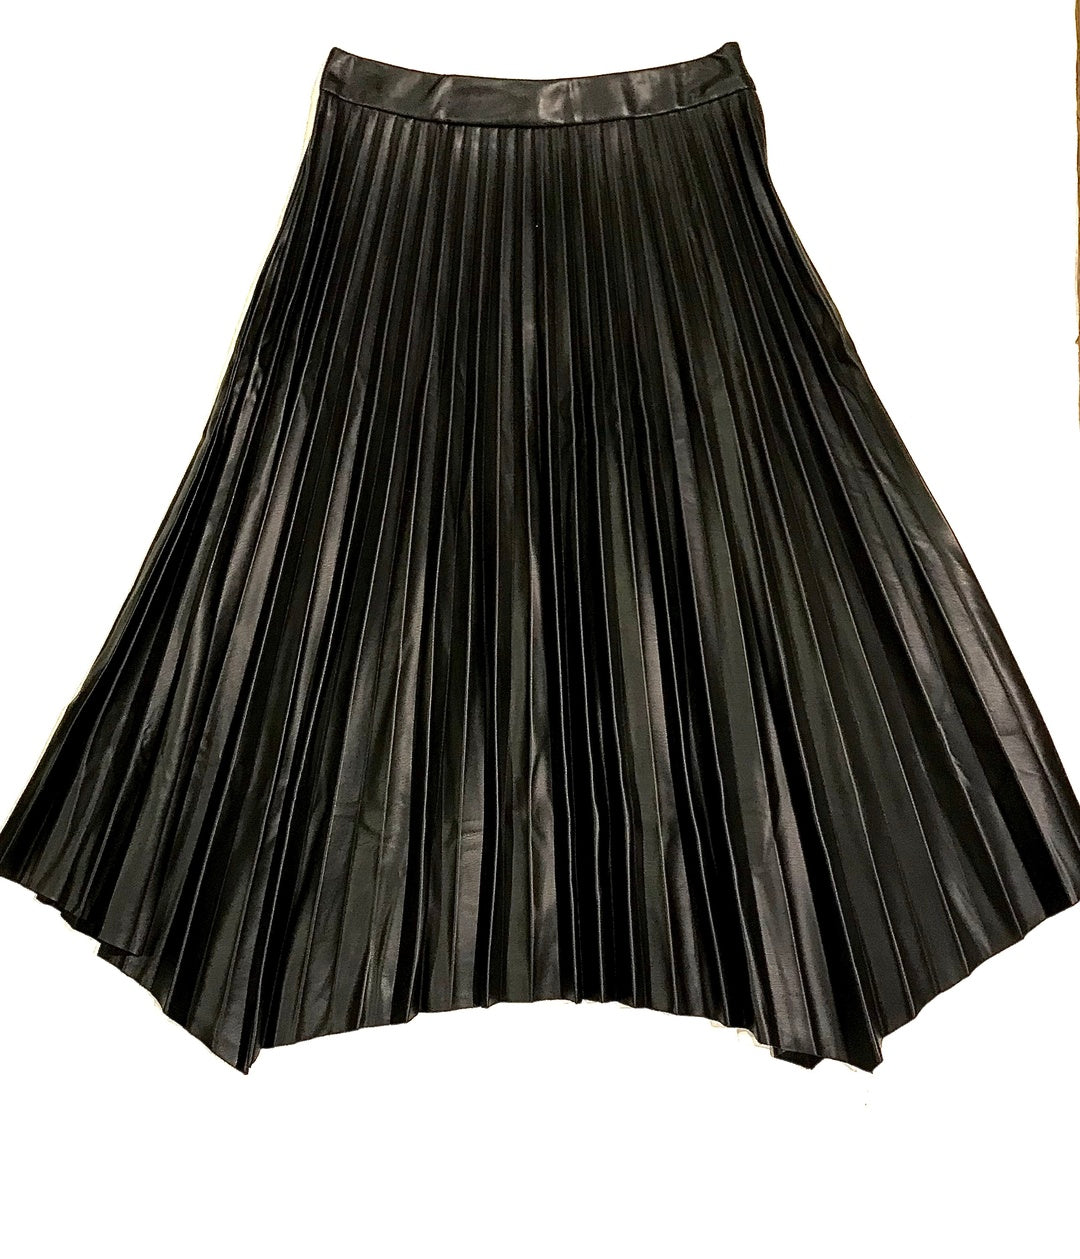 Ellison faux pleated leather skirt KS-1118